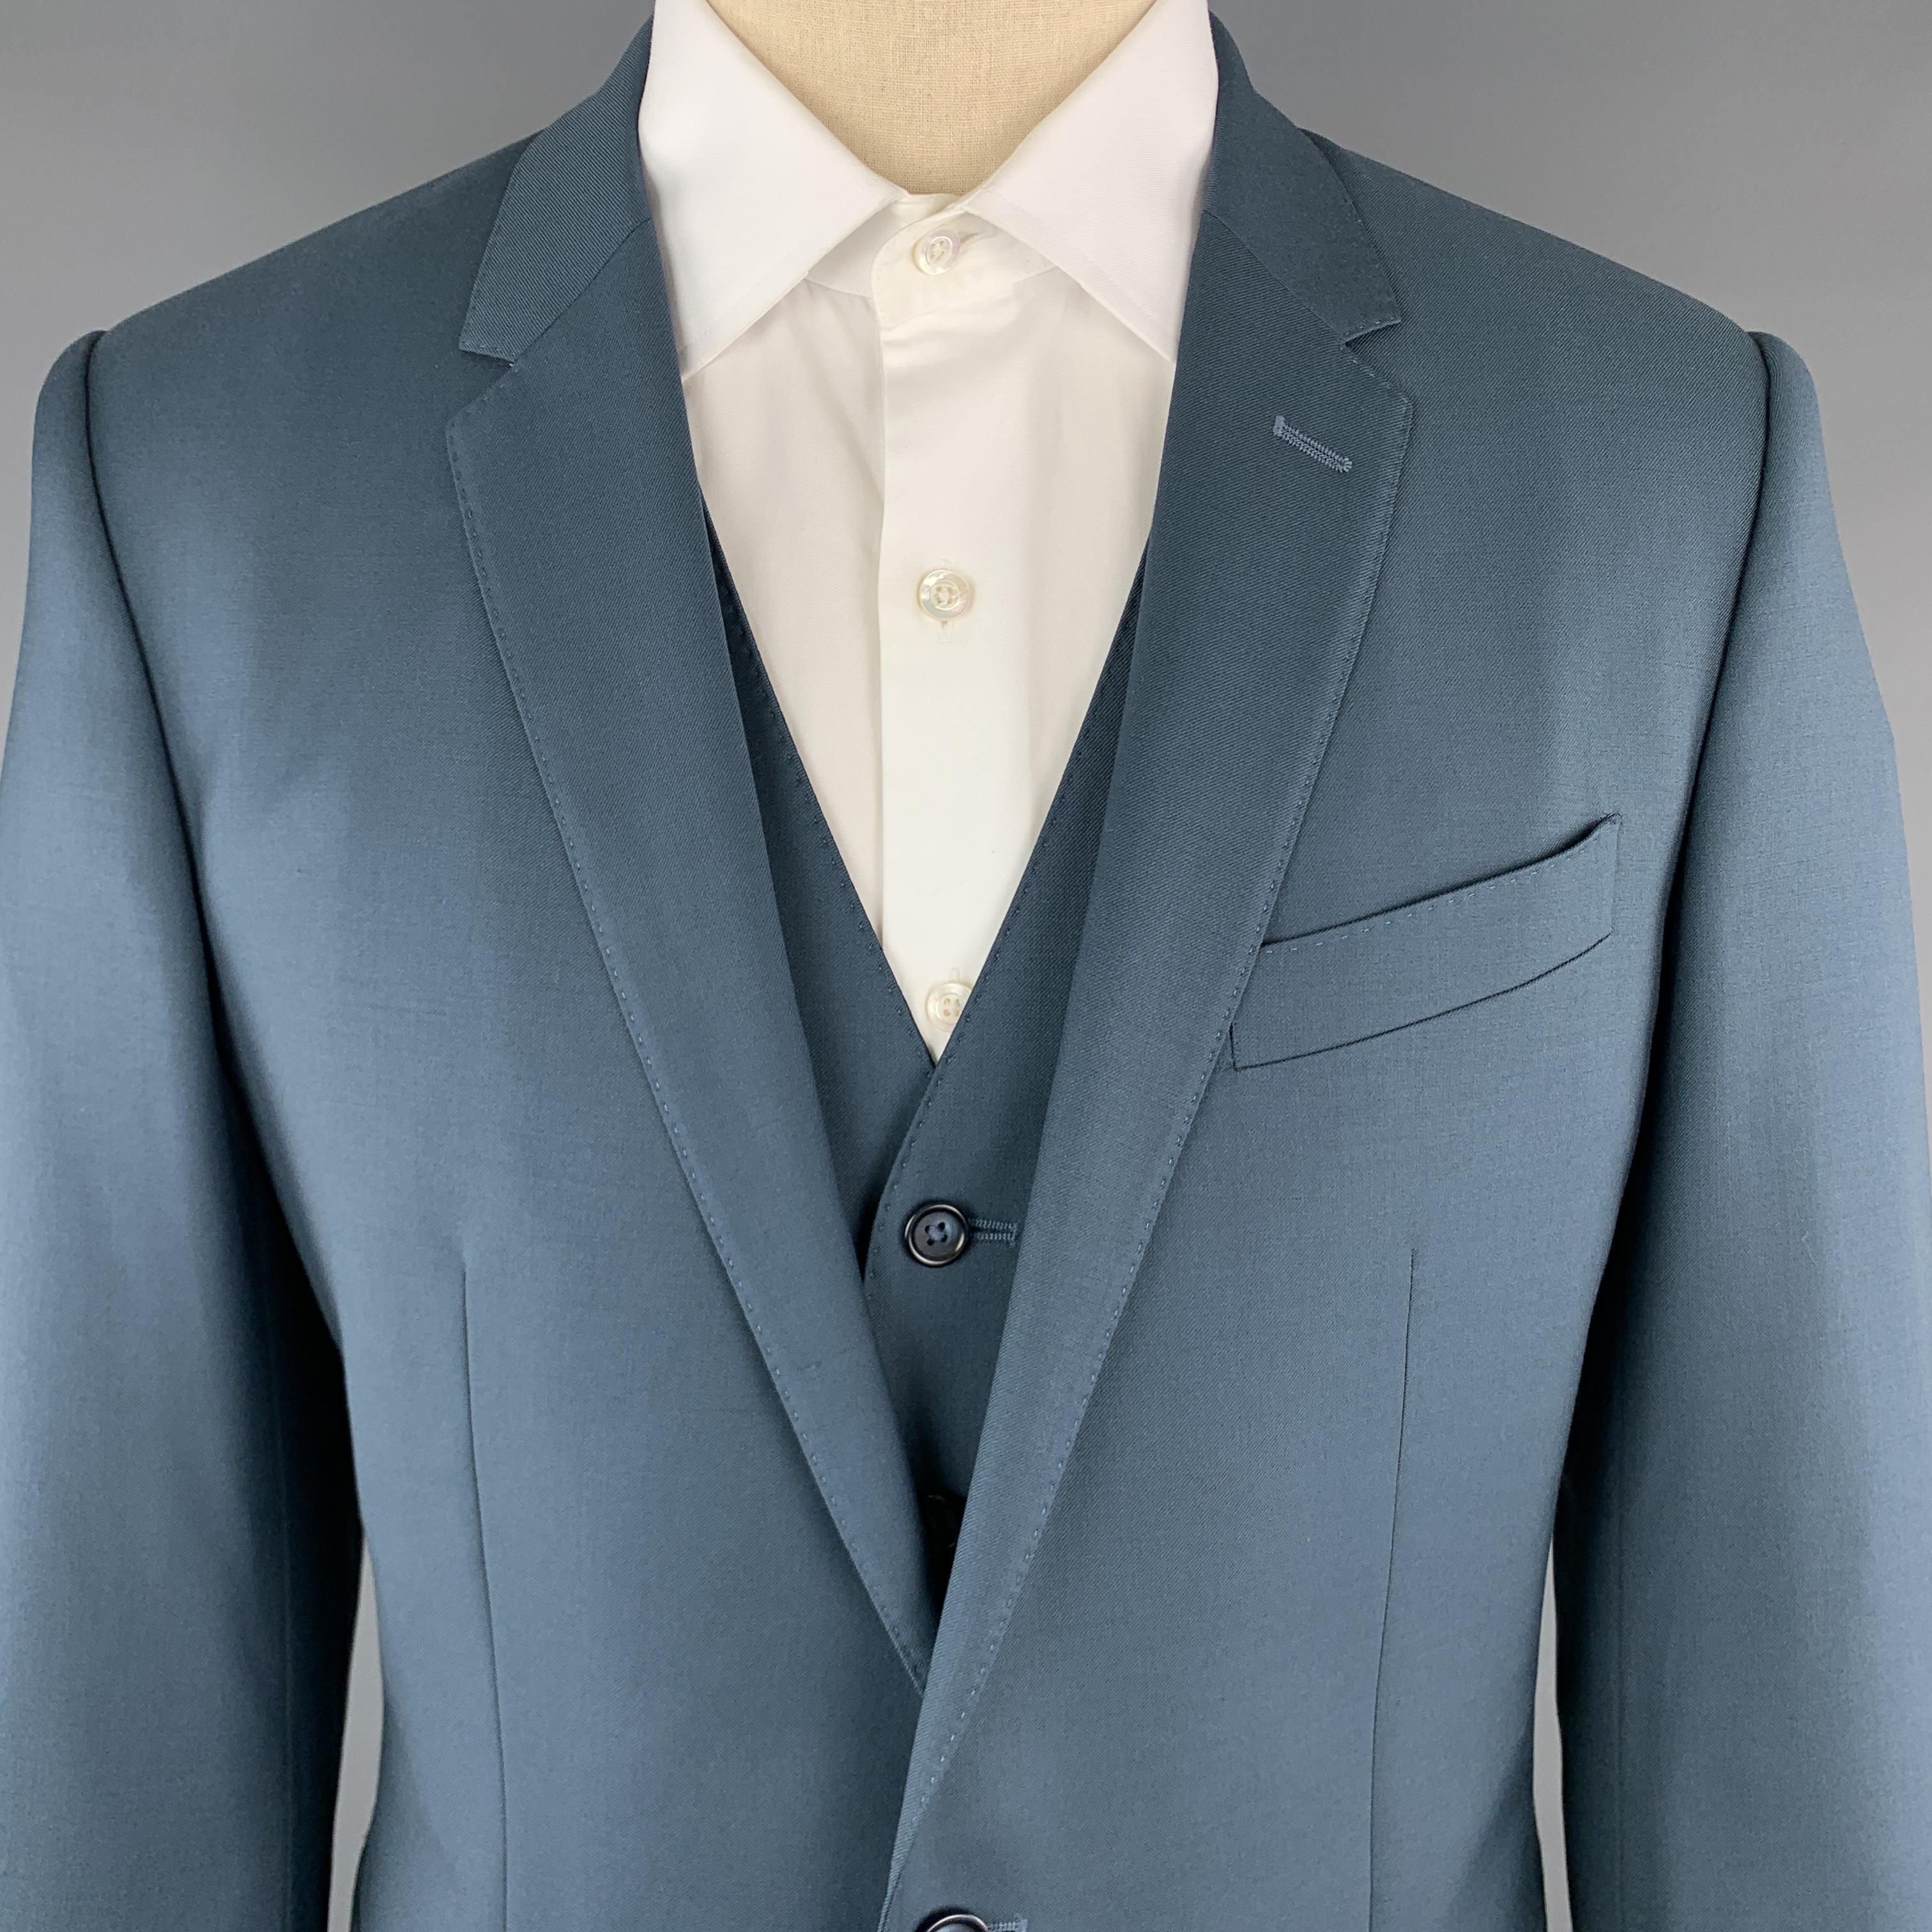 blue teal suit